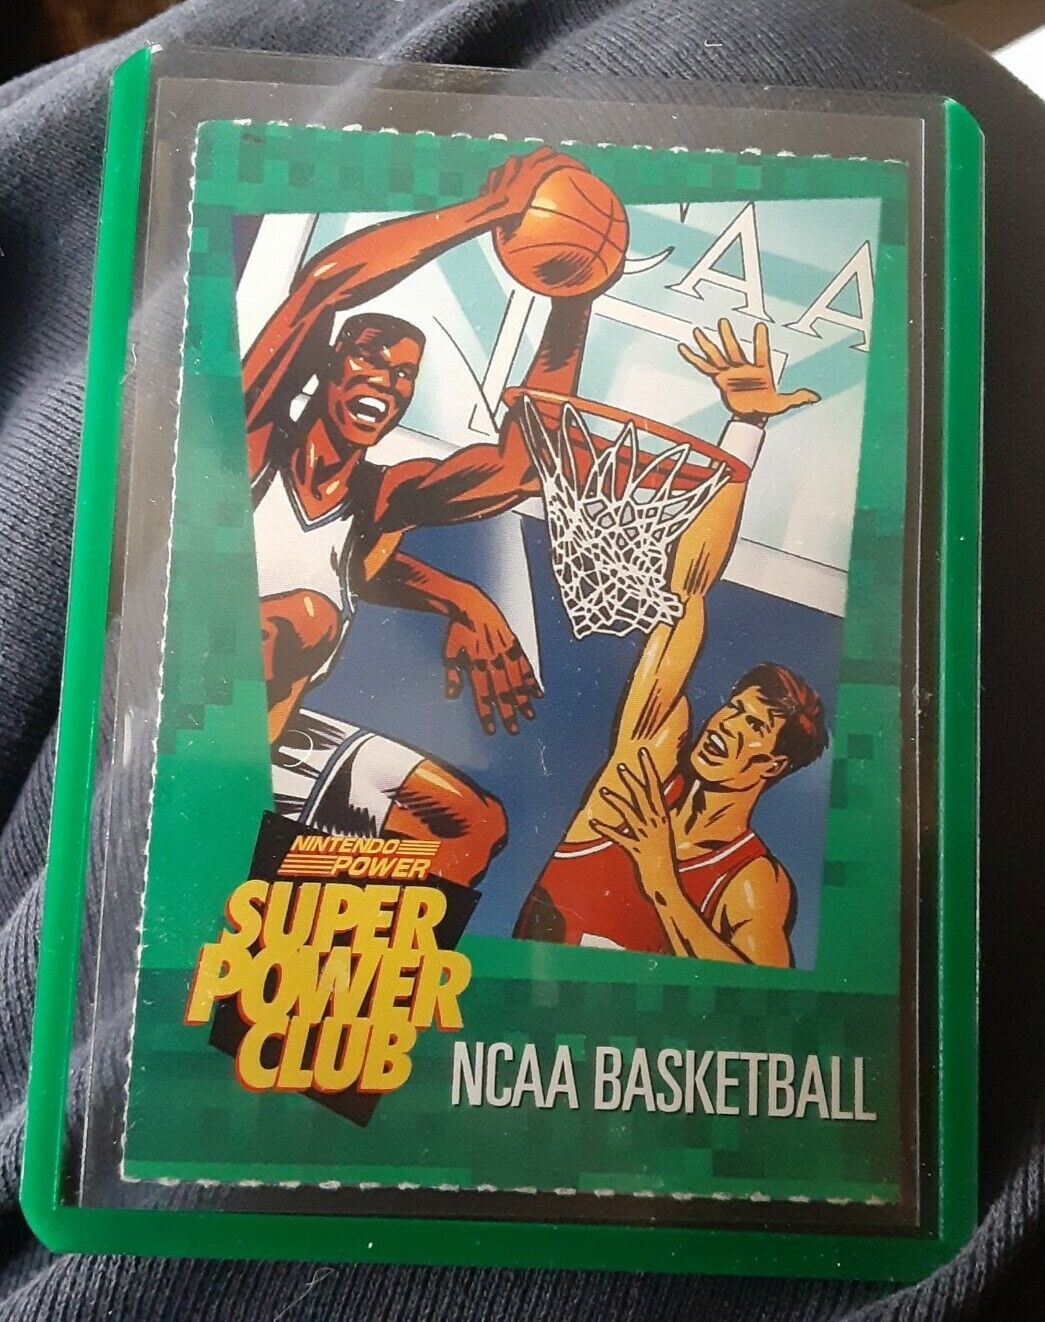 Super Power Club - Nintendo Power 1992 NCAA BASKETBALL NBA Trading Card RARE 🏀